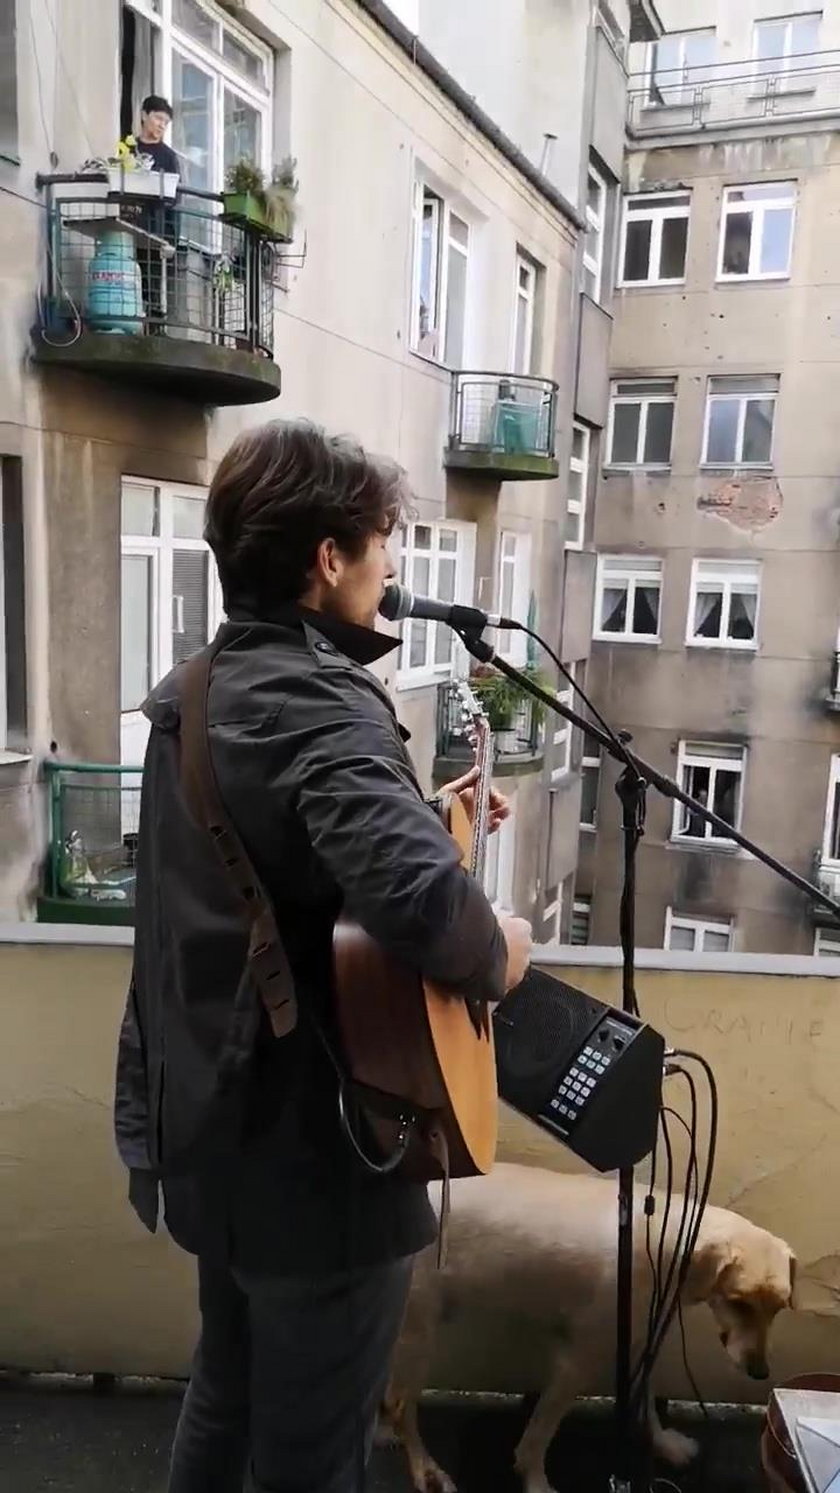 Michał Sołtan zagrał koncert na... balkonie! Nagranie hitem internetu